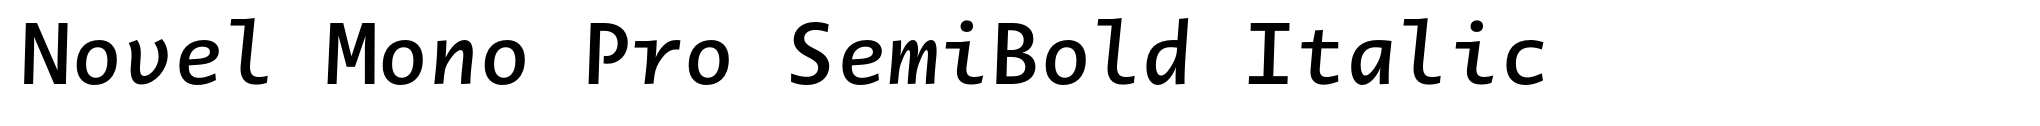 Novel Mono Pro SemiBold Italic image